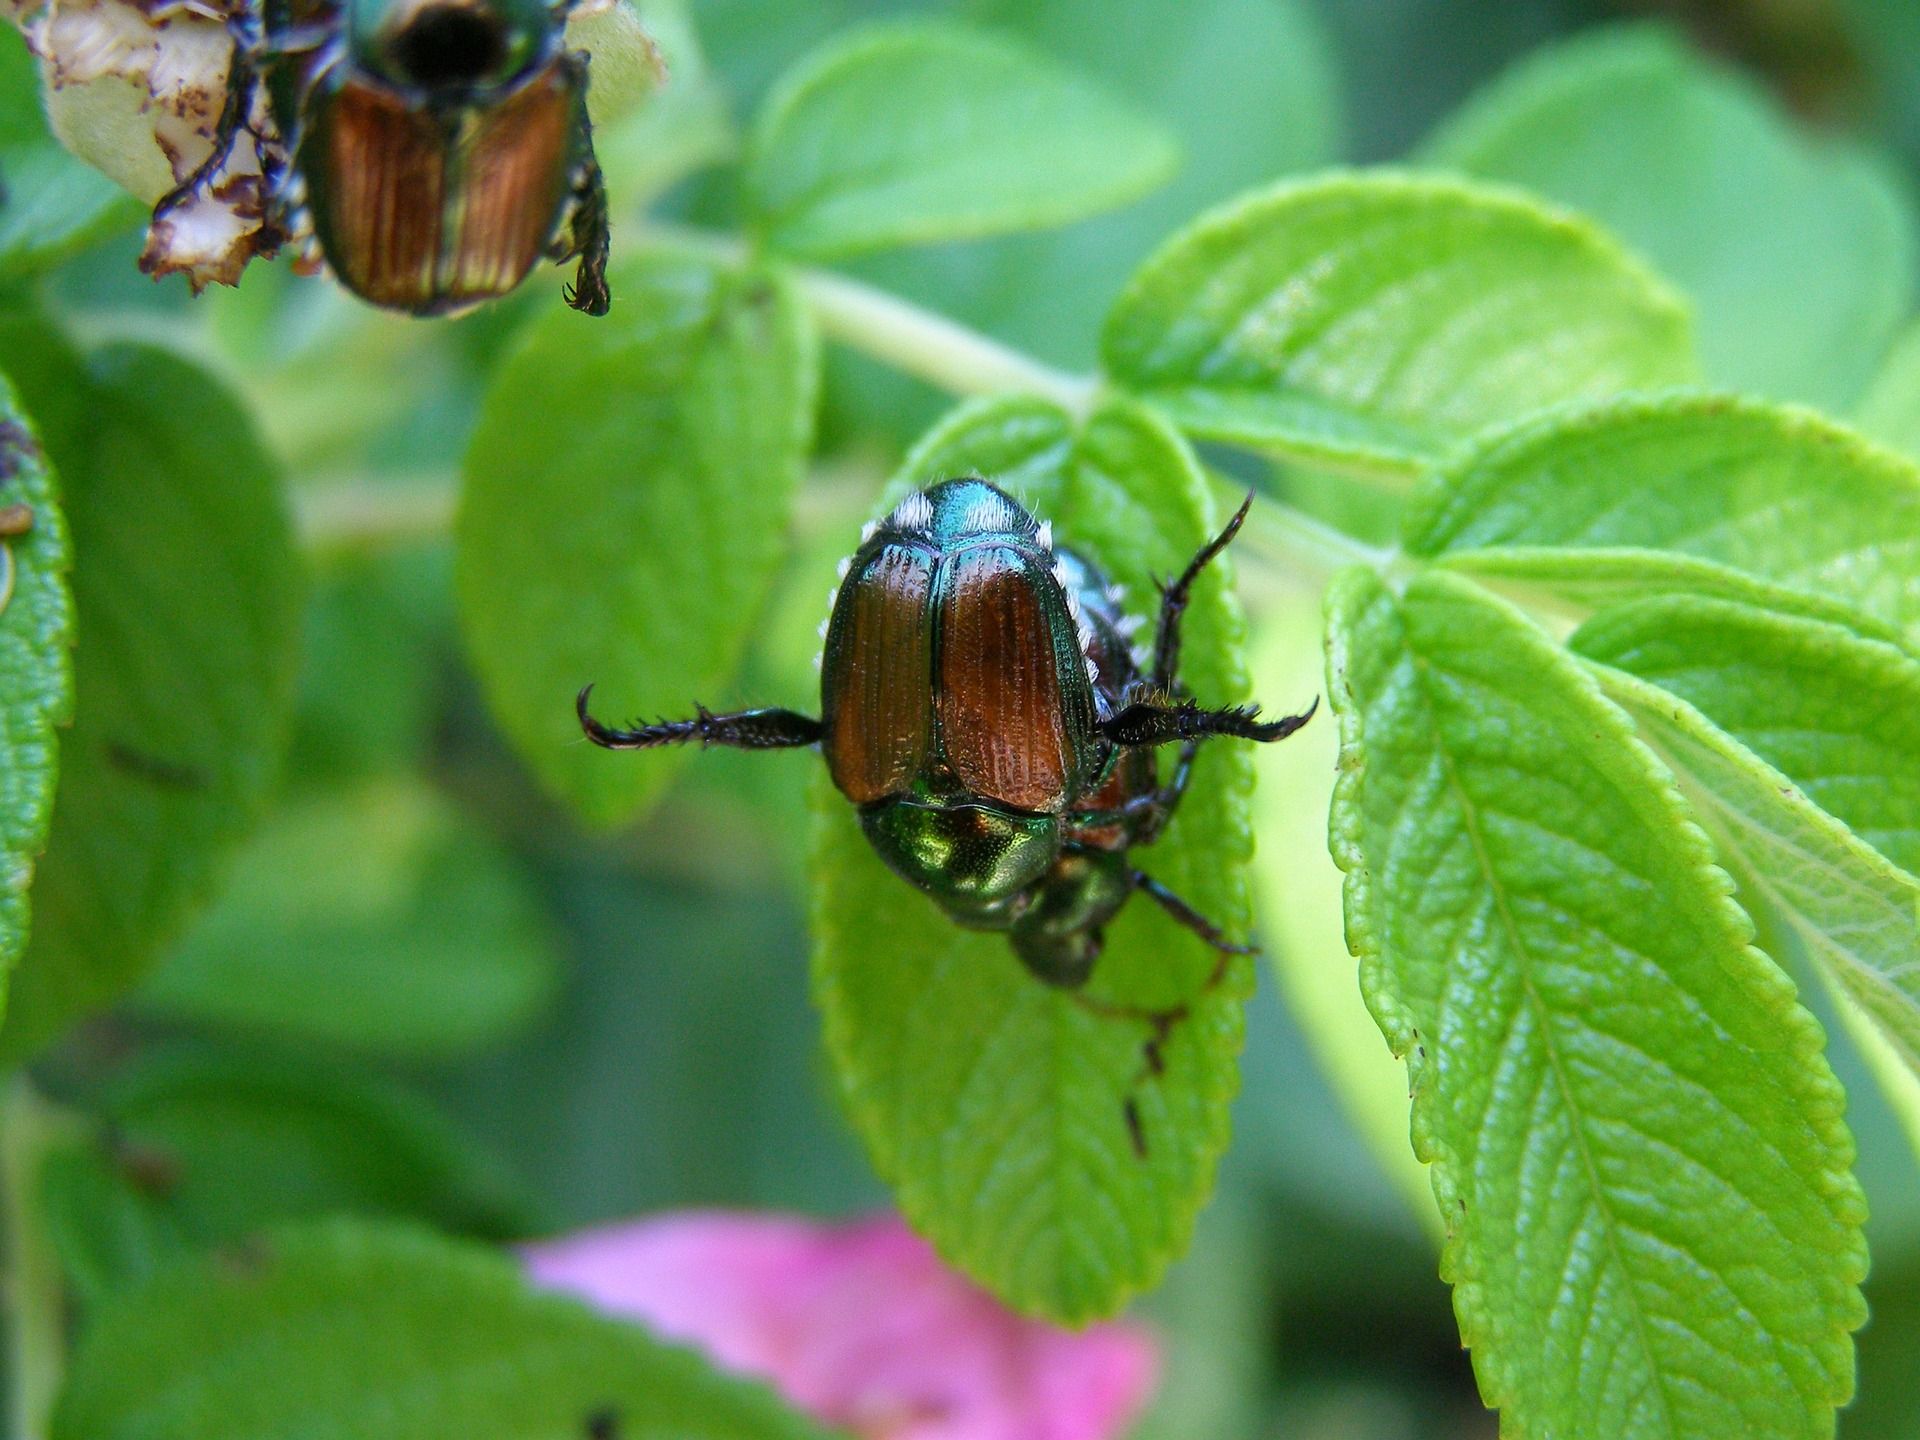 japanese beetles on leaf https://extension.unh.edu/resource/european-corn-borer-fact-sheet